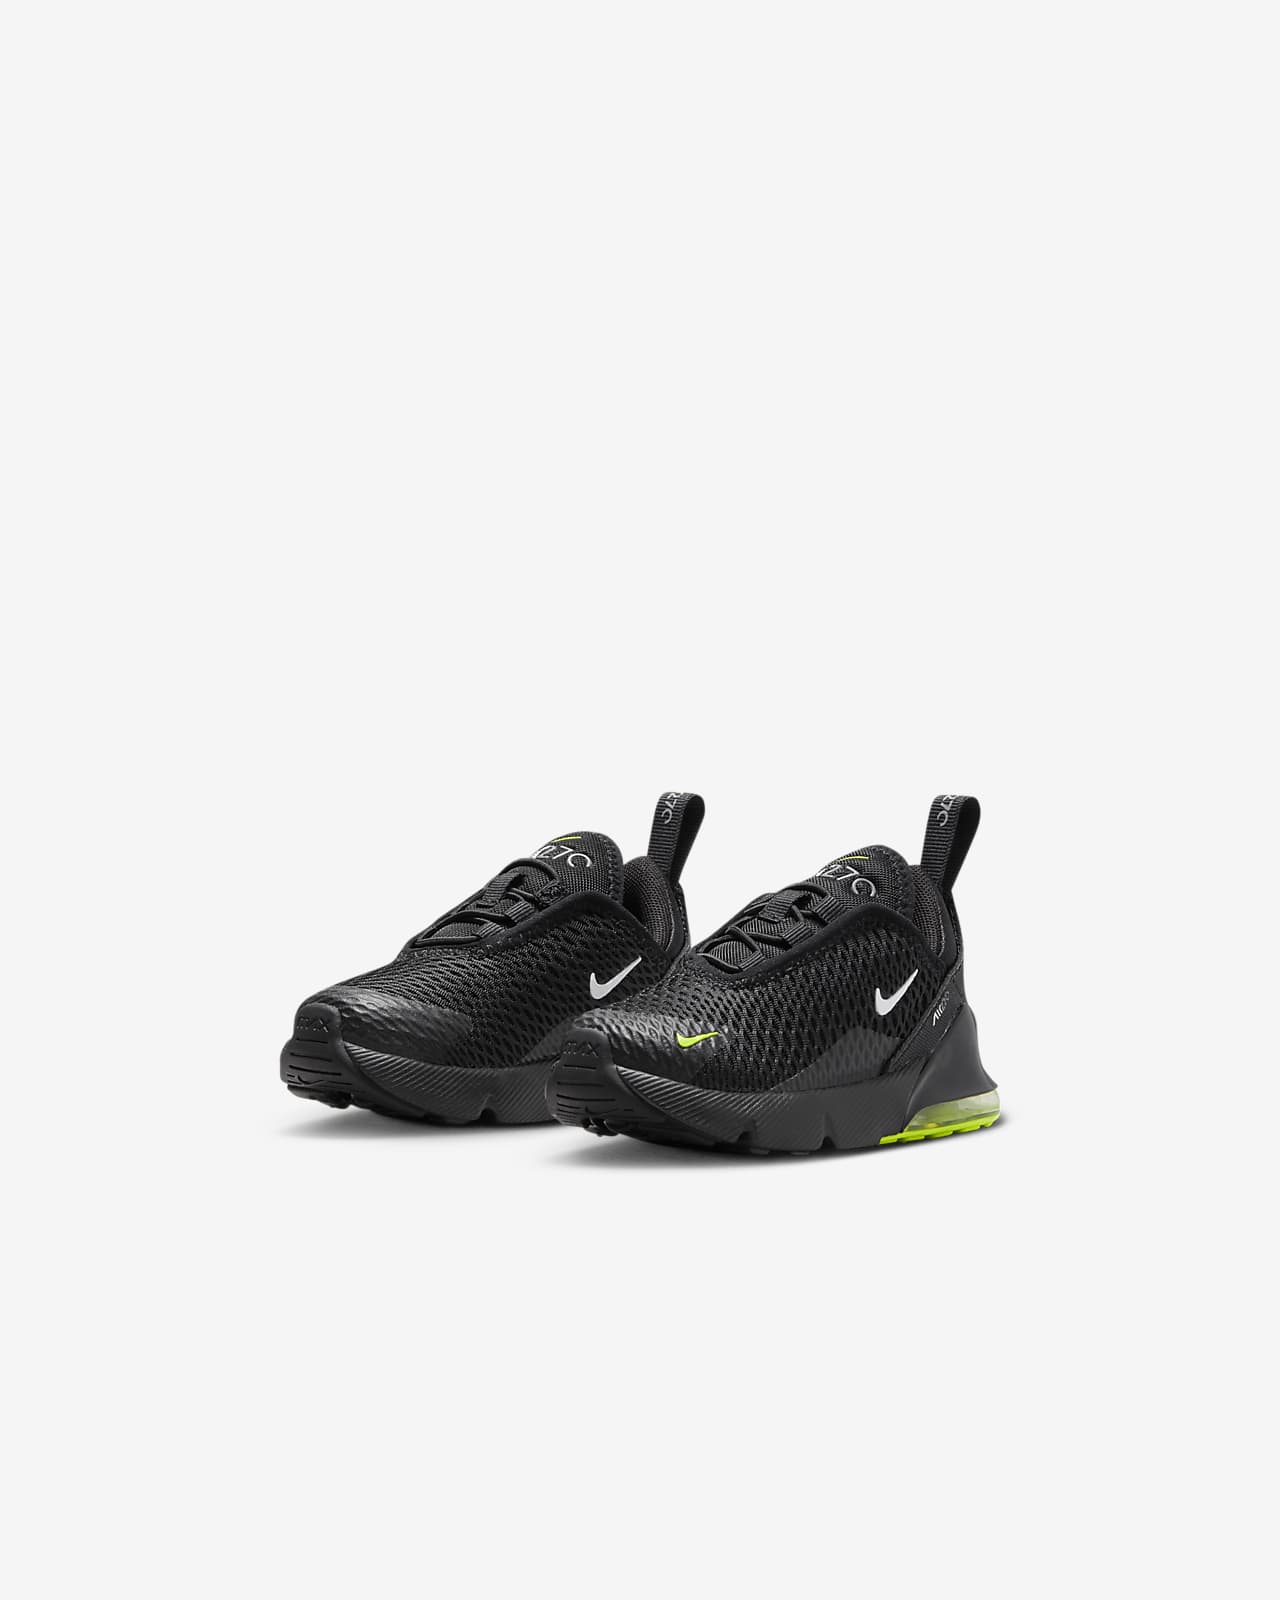 Nike Air Max 270 Shoes